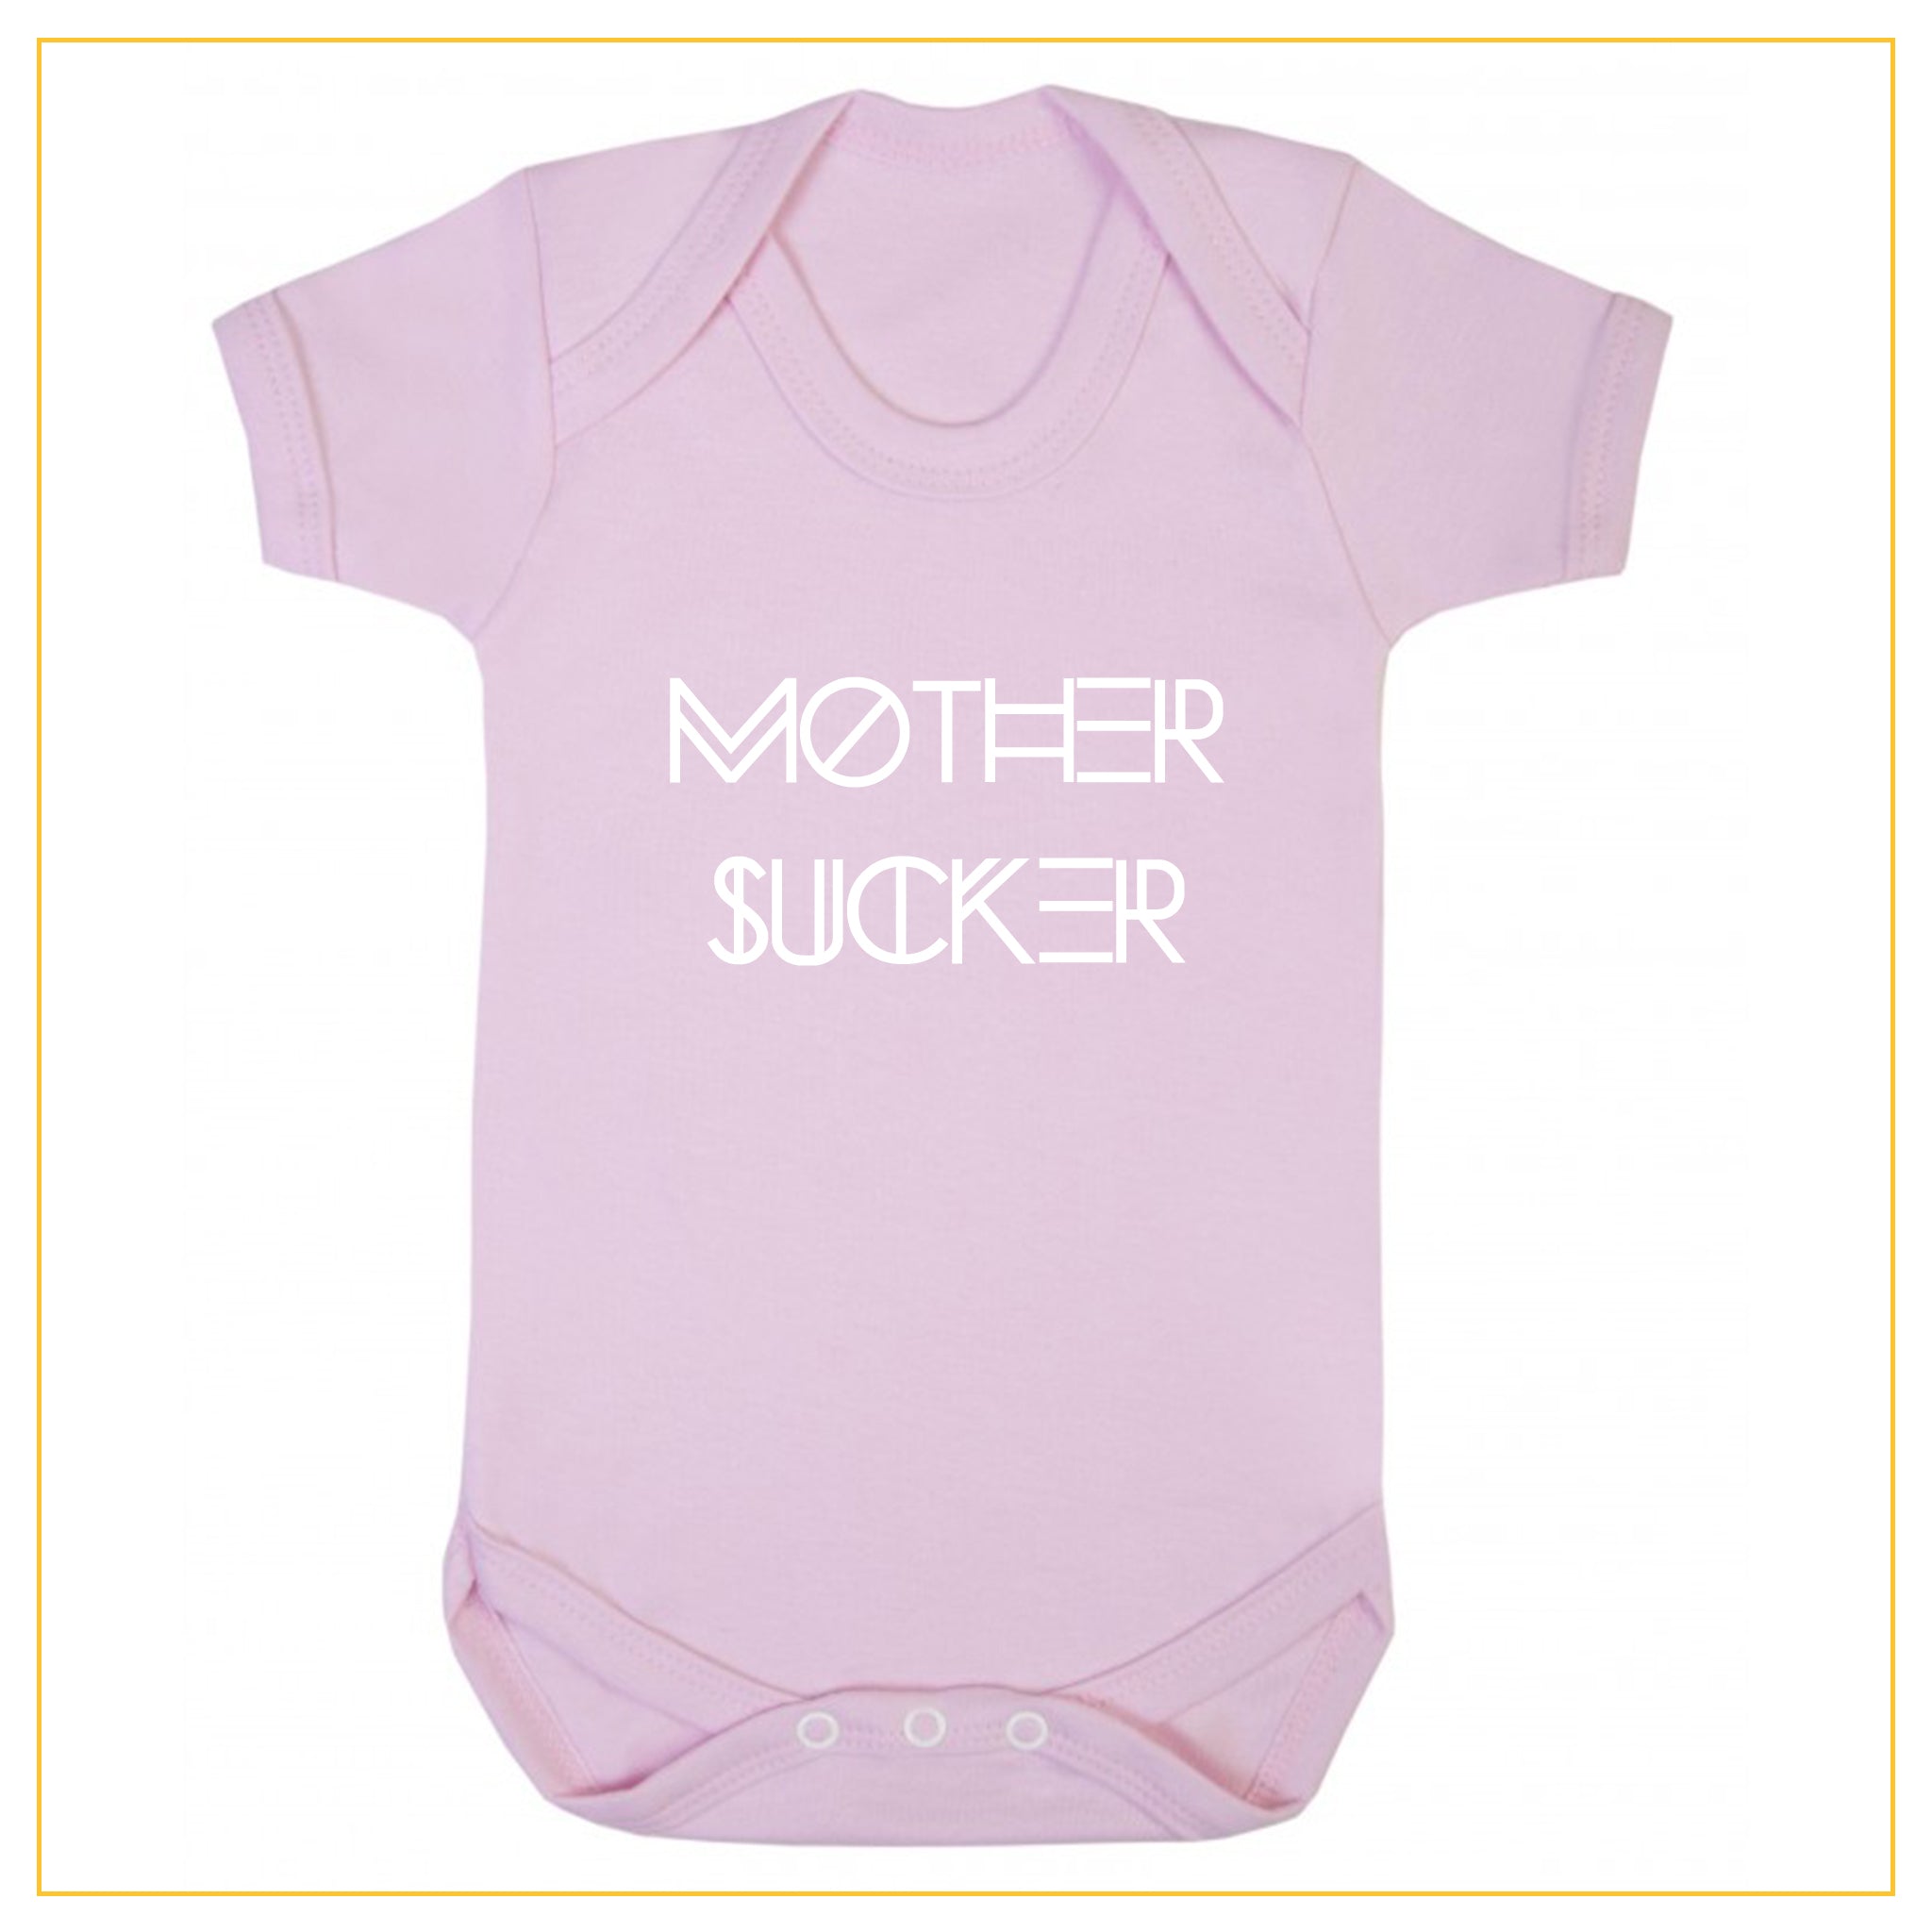 mother sucker novelty baby onesie in dust pink